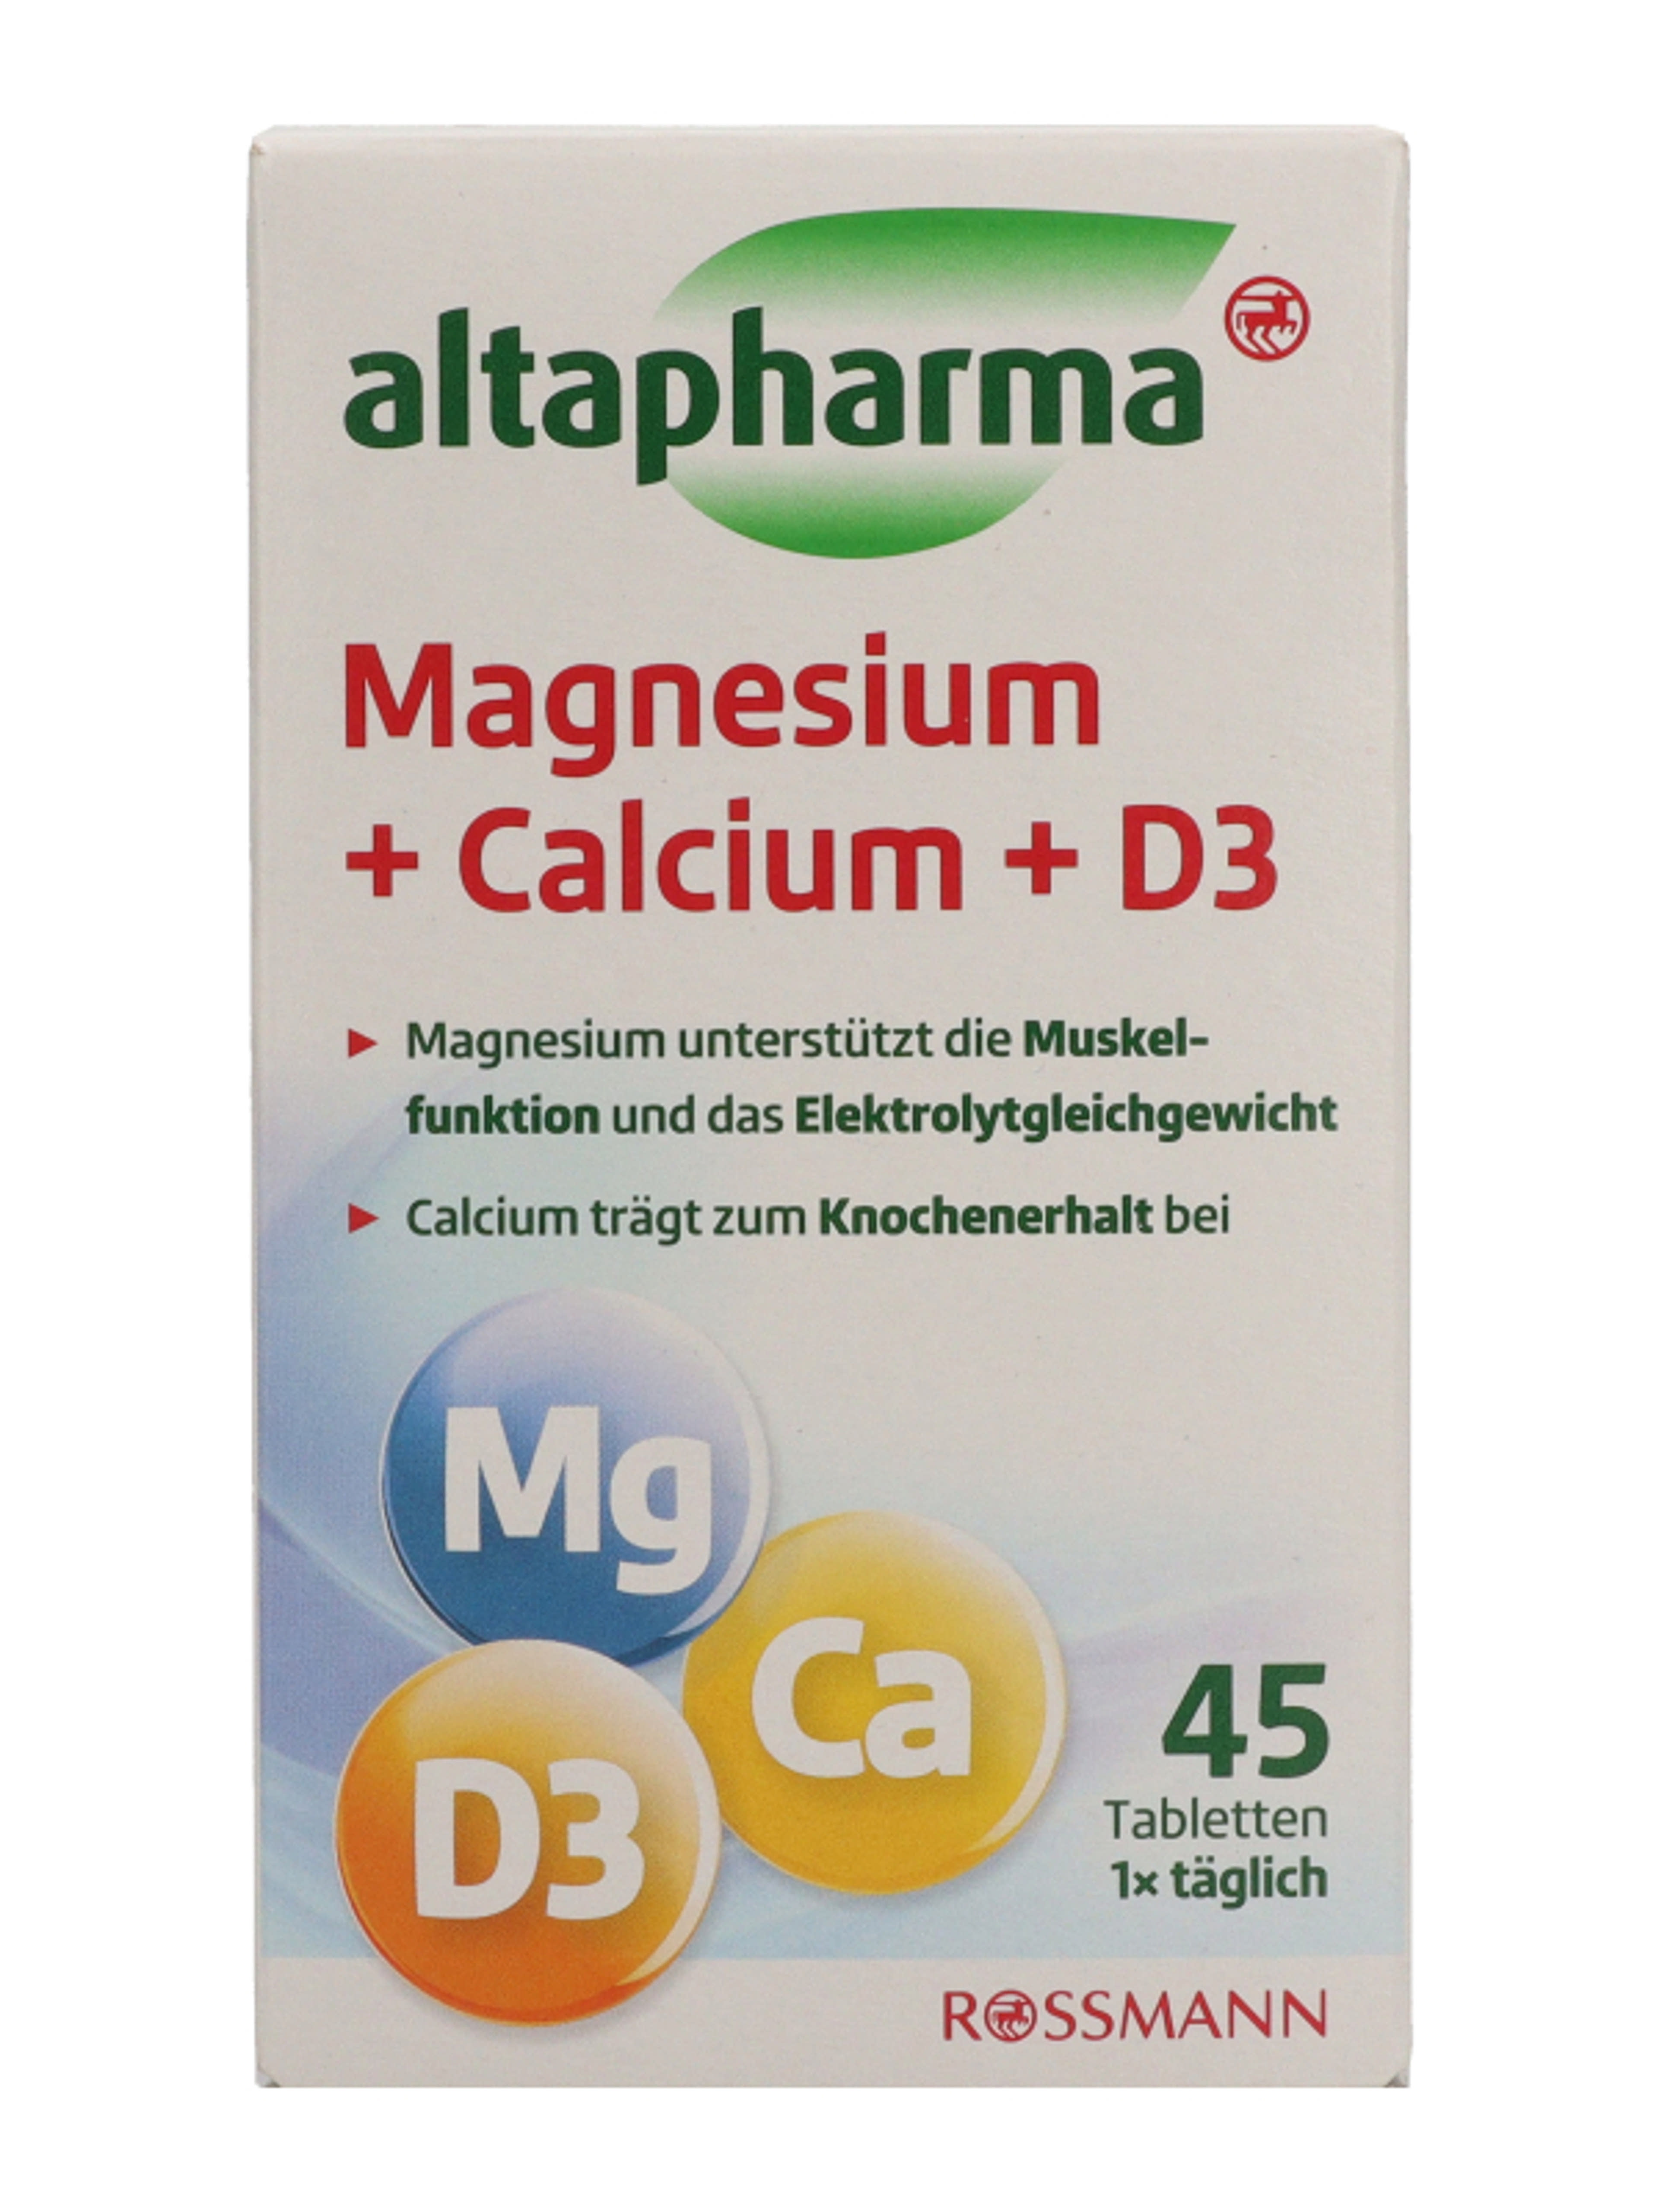 Altapharma magnézium, kalcium és D3-vitamin tabletta - 45 db-2